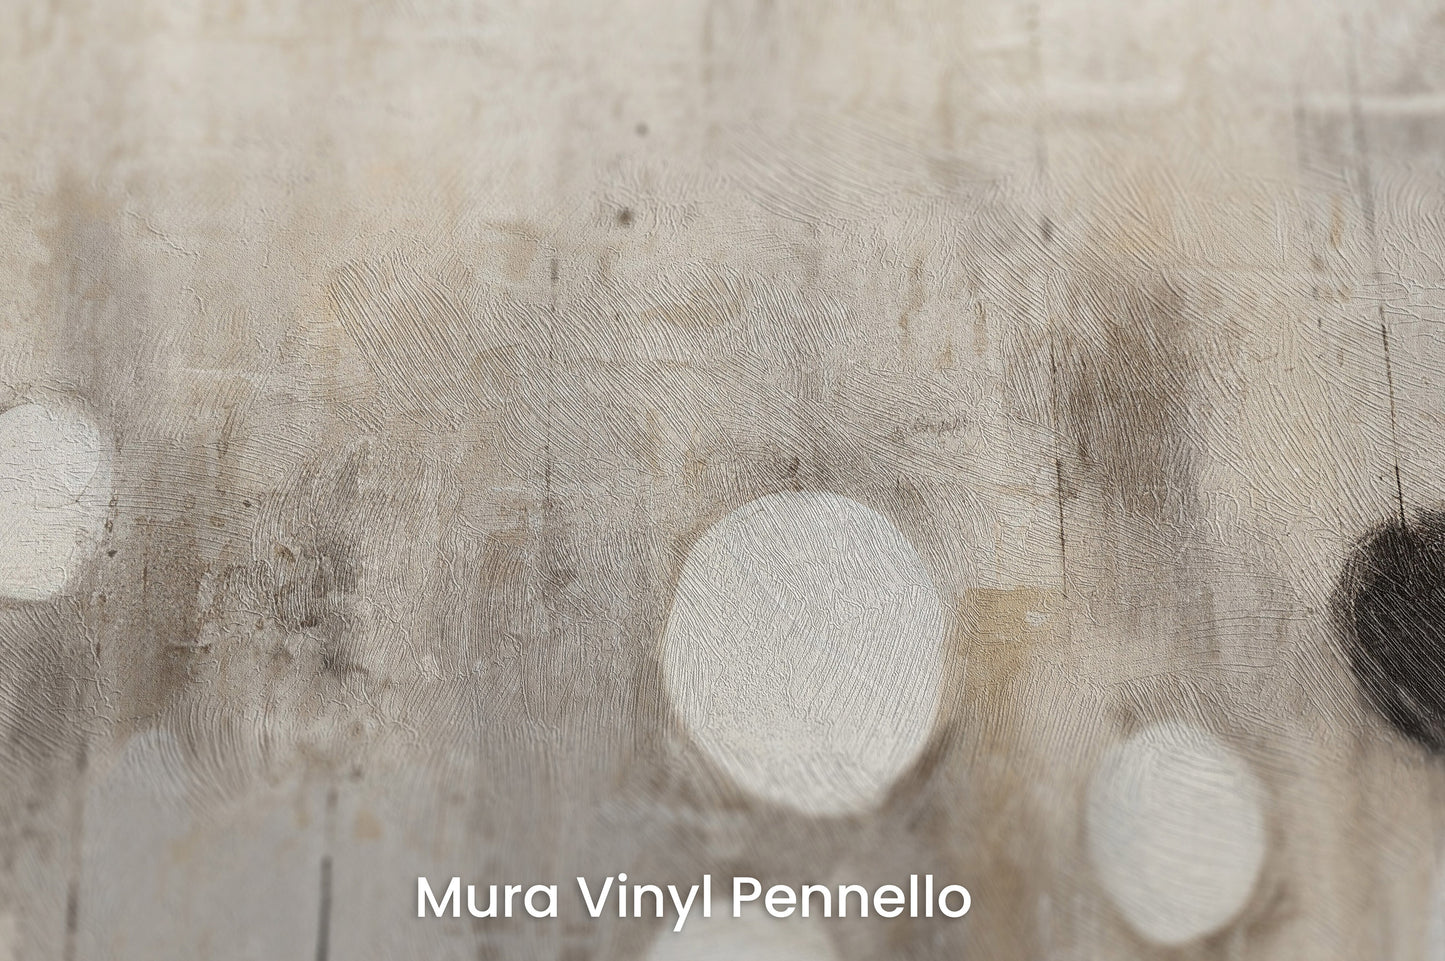 Zbliżenie na artystyczną fototapetę o nazwie MONOCHROME ELEGANCE SPHERES na podłożu Mura Vinyl Pennello - faktura pociągnięć pędzla malarskiego.